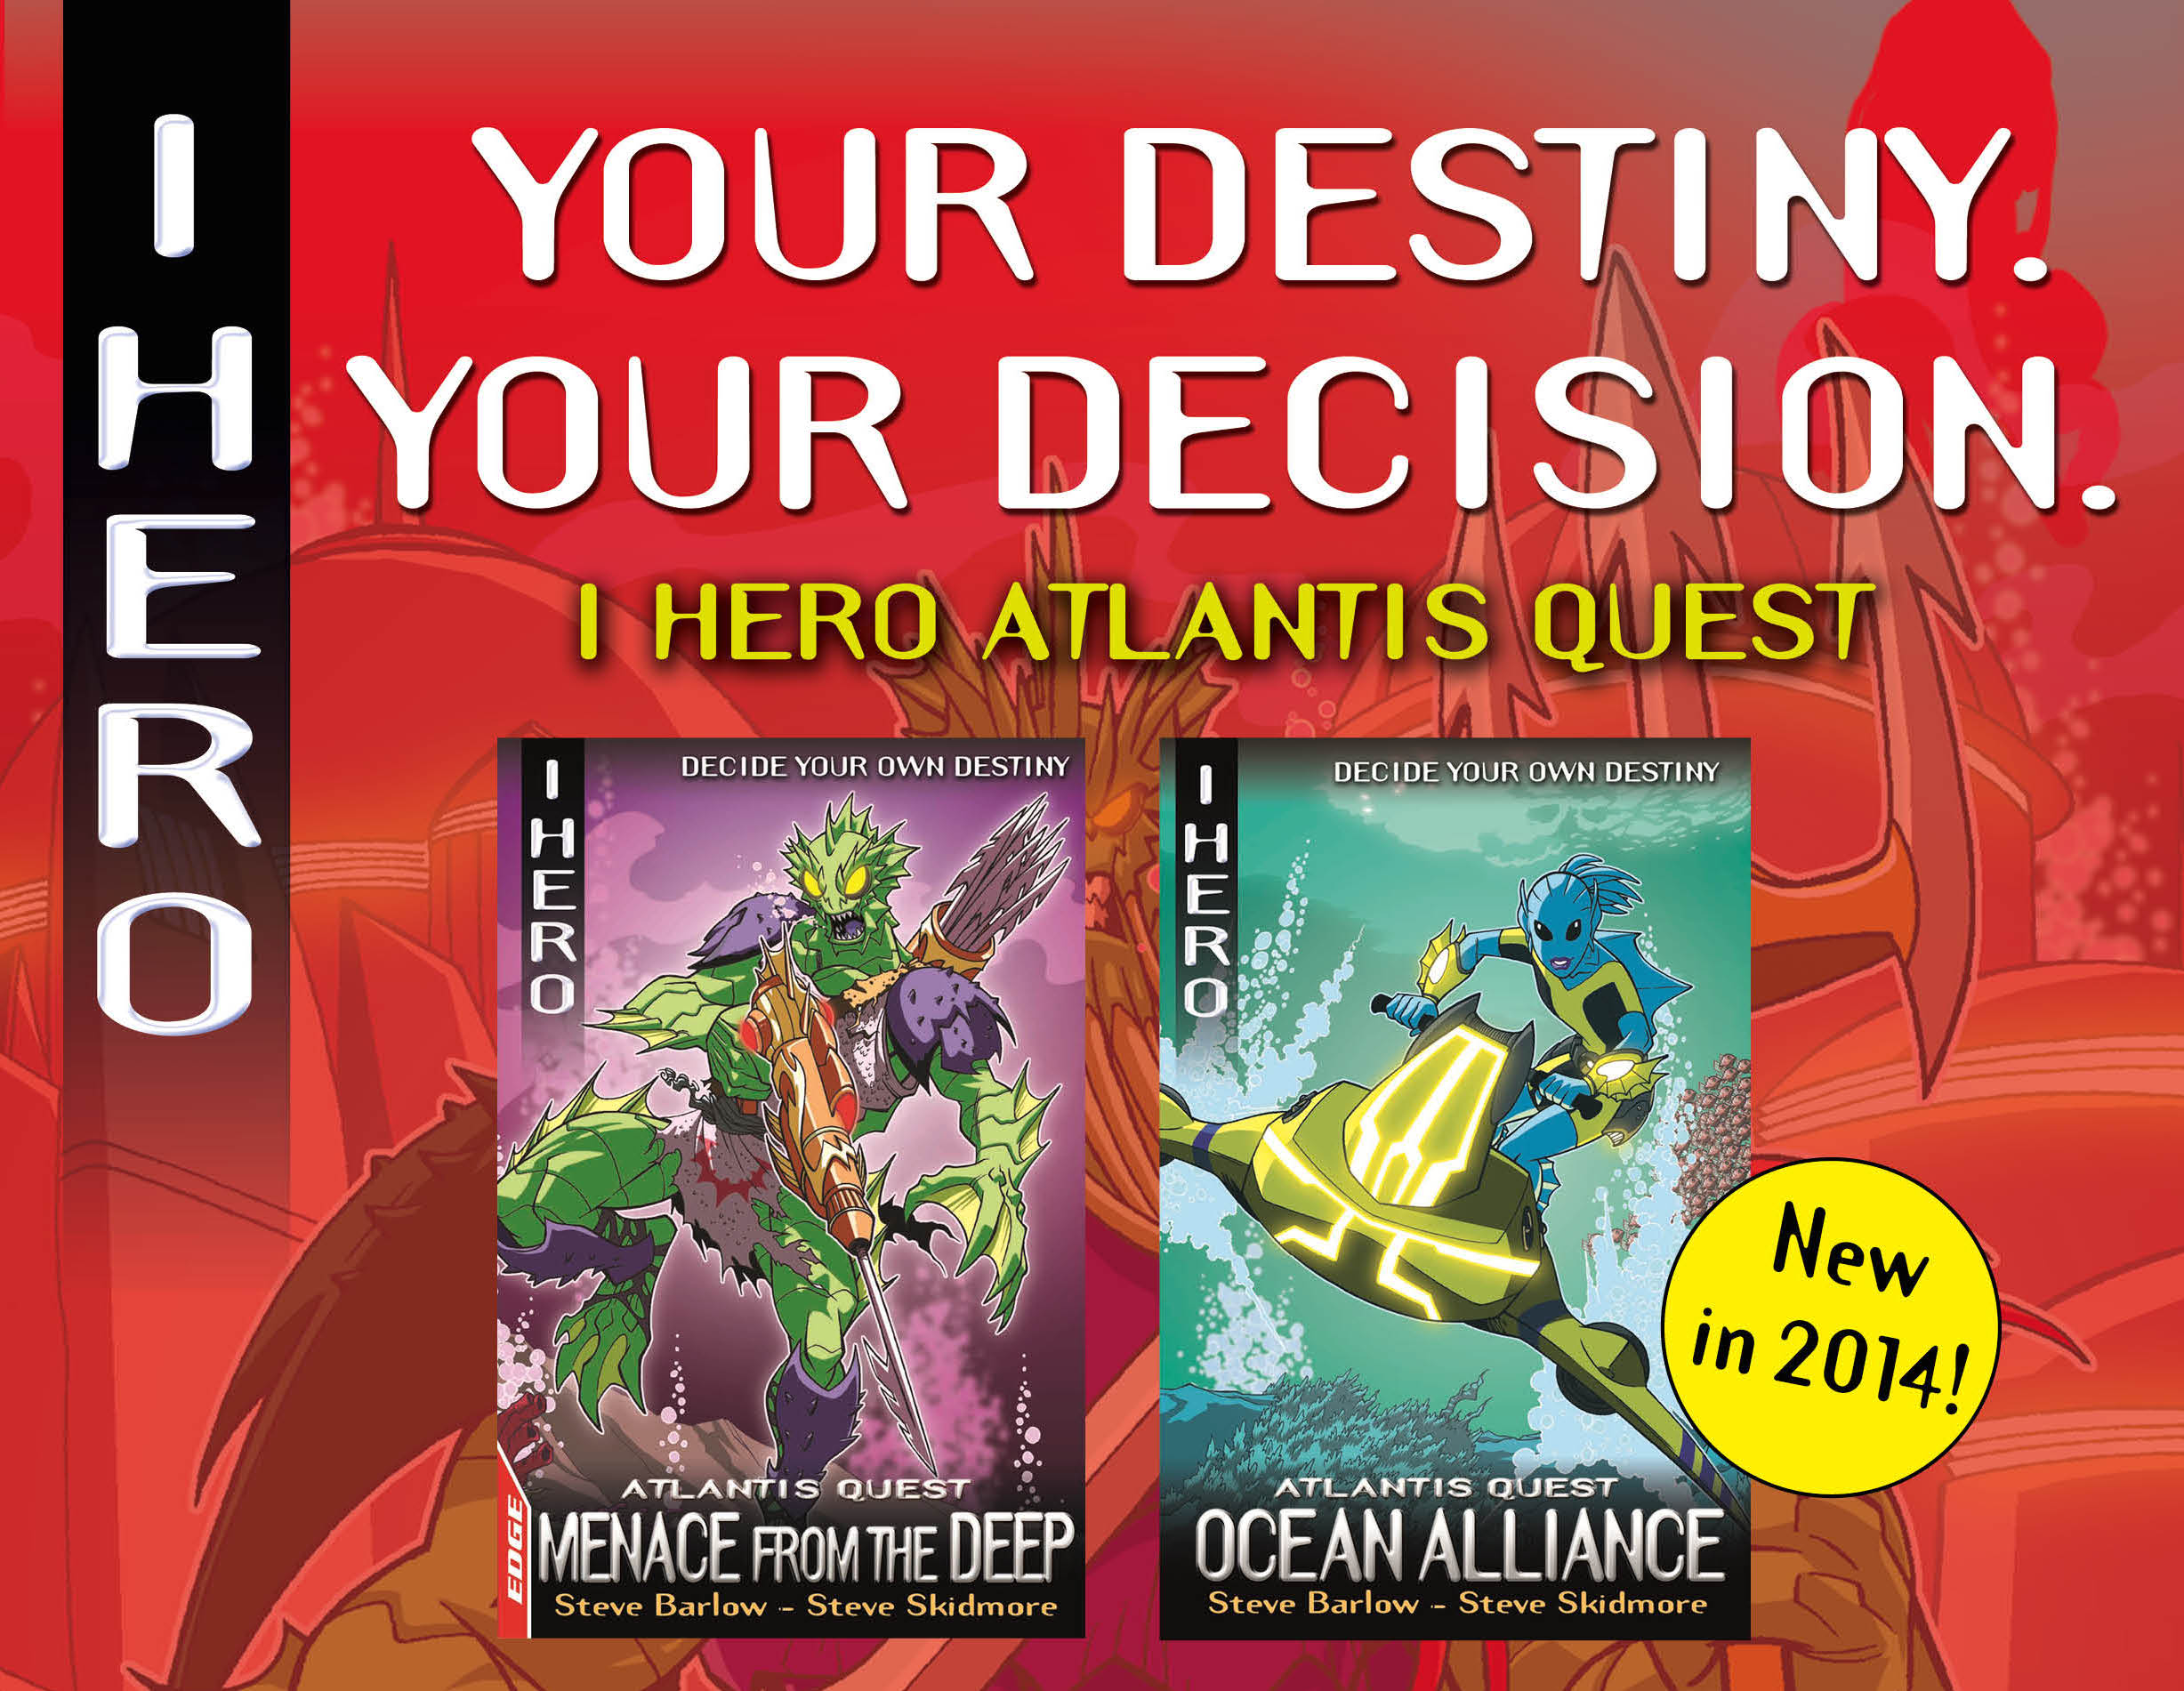 iHero – Atlantis Quest